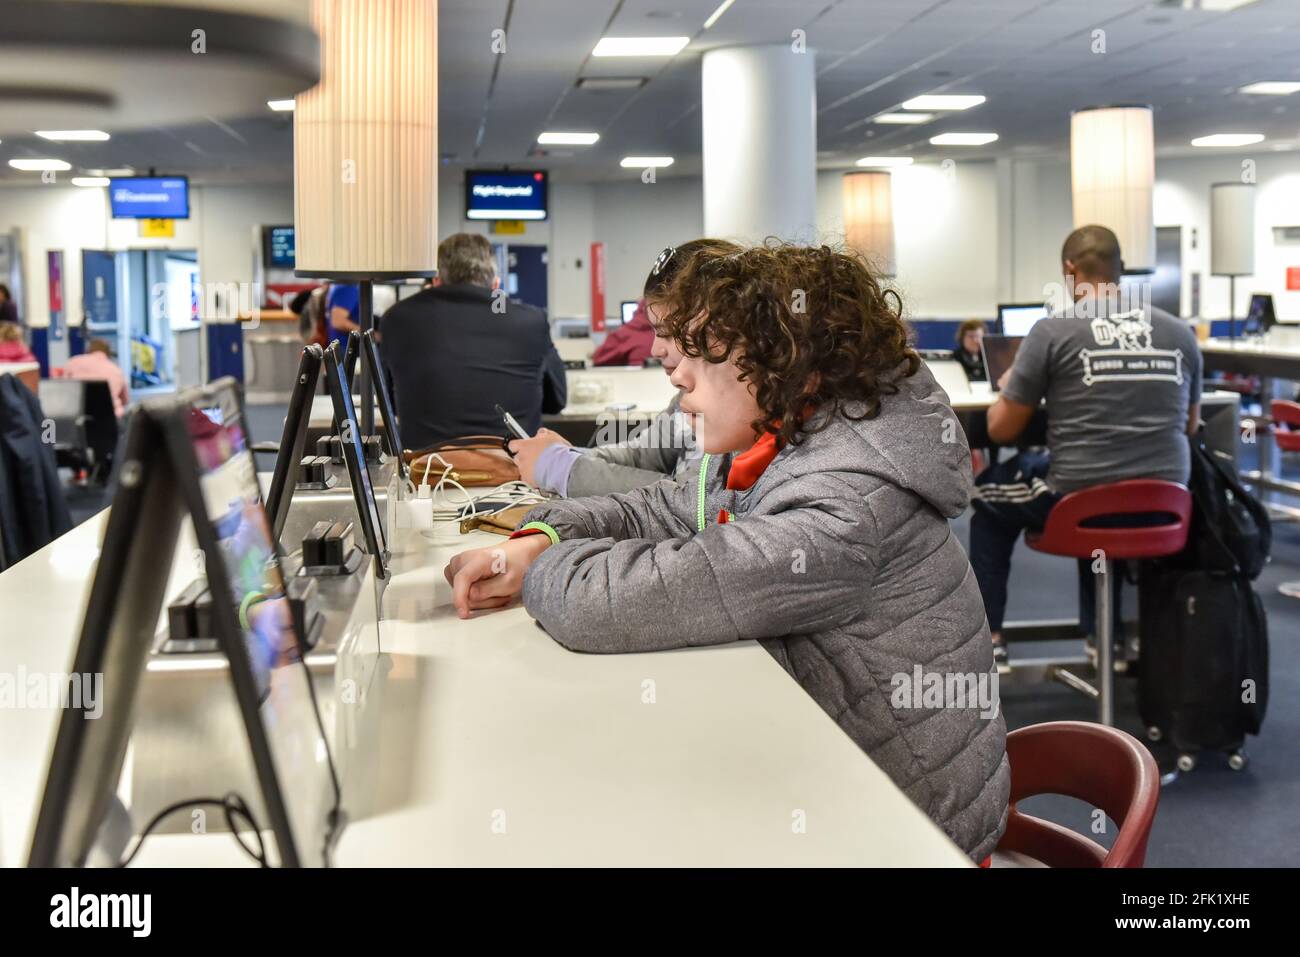 Bestellung von Lebensmitteln auf einem Tablet am Pearson Airport, Toronto, Kanada Stockfoto